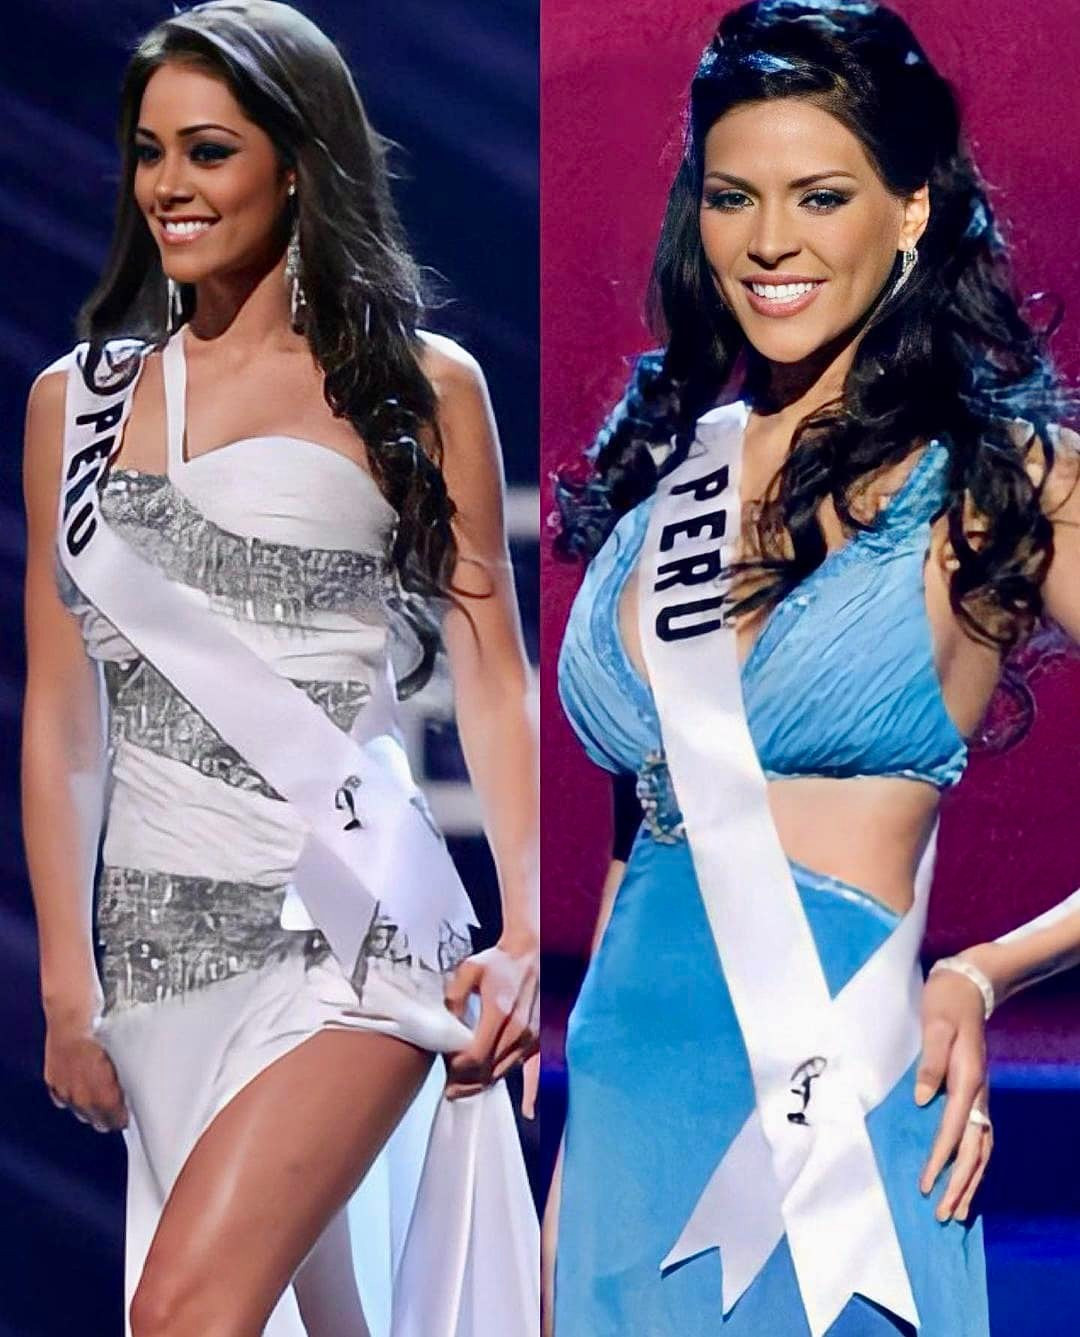 peruanas de miss universe de 2002 a 2021. Vw2NqJ